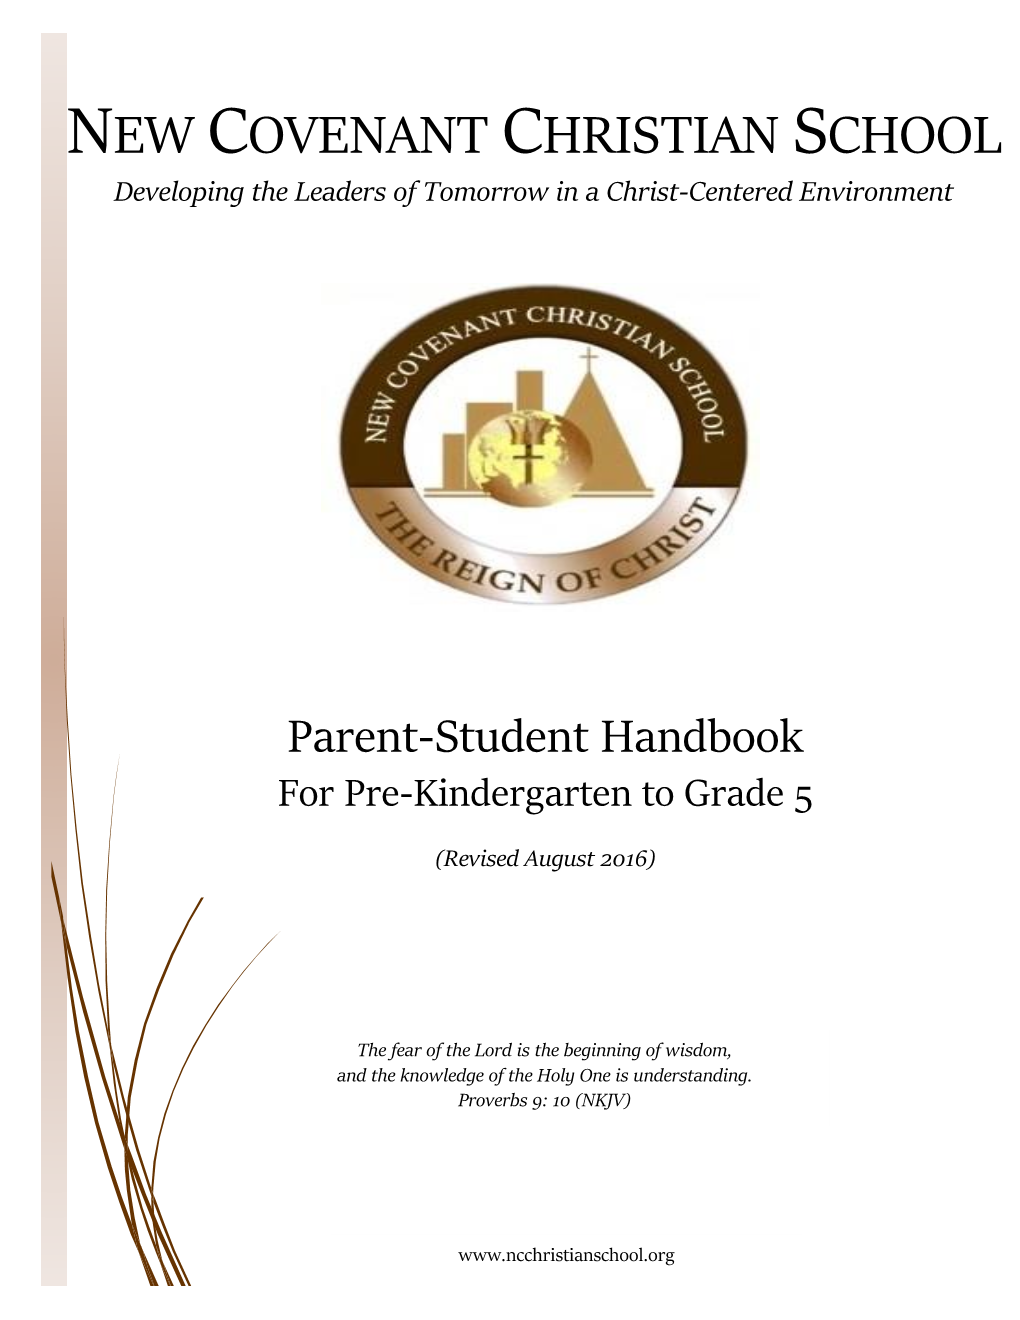 Parent-Student Handbook for Pre-Kindergarten to Grade 5